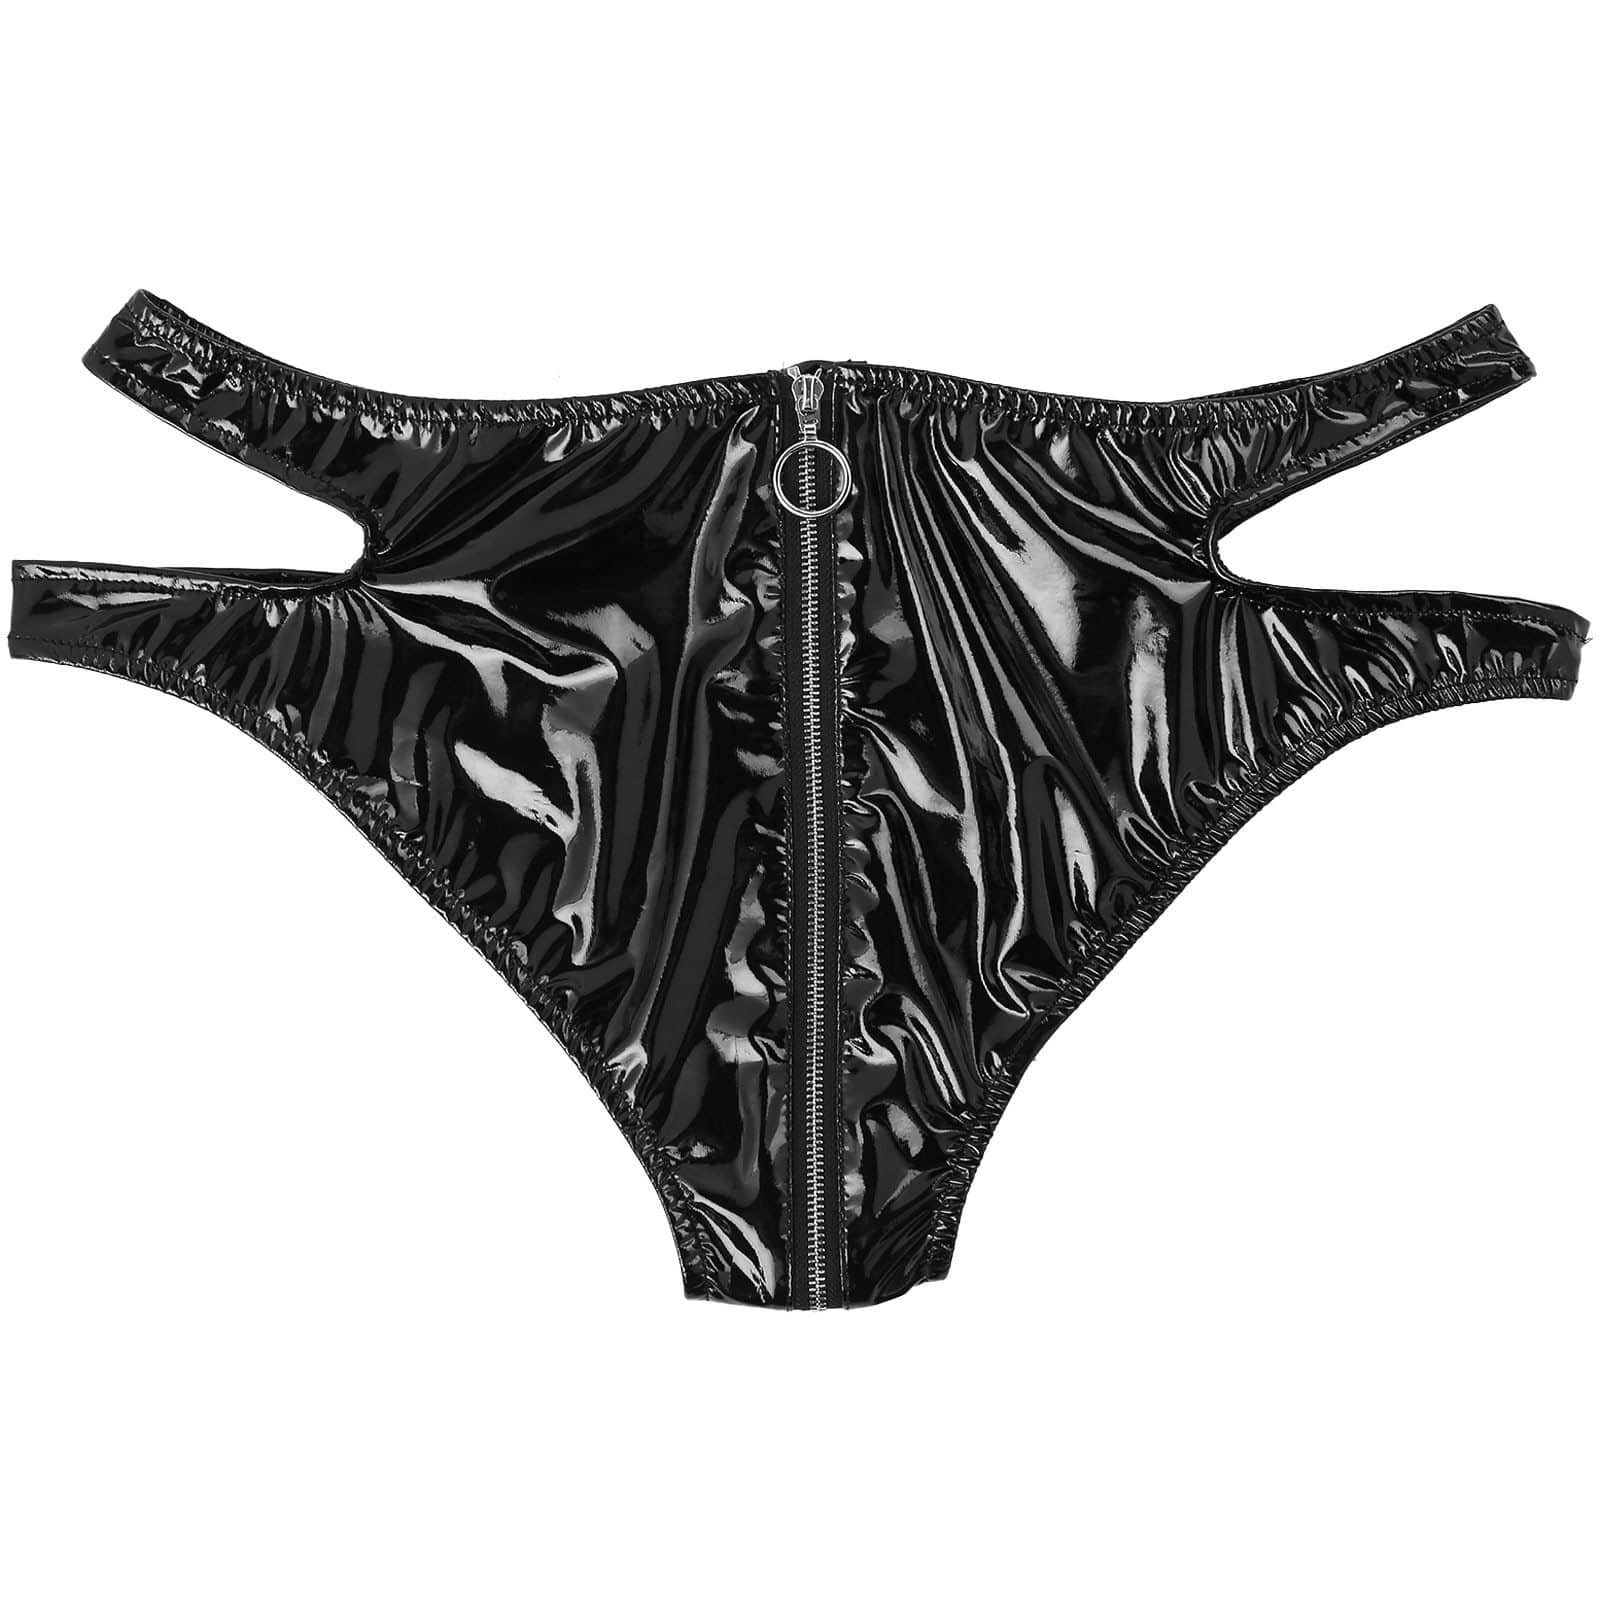 Kinky Cloth 351 Black Zipper Crotch Shiny Panties